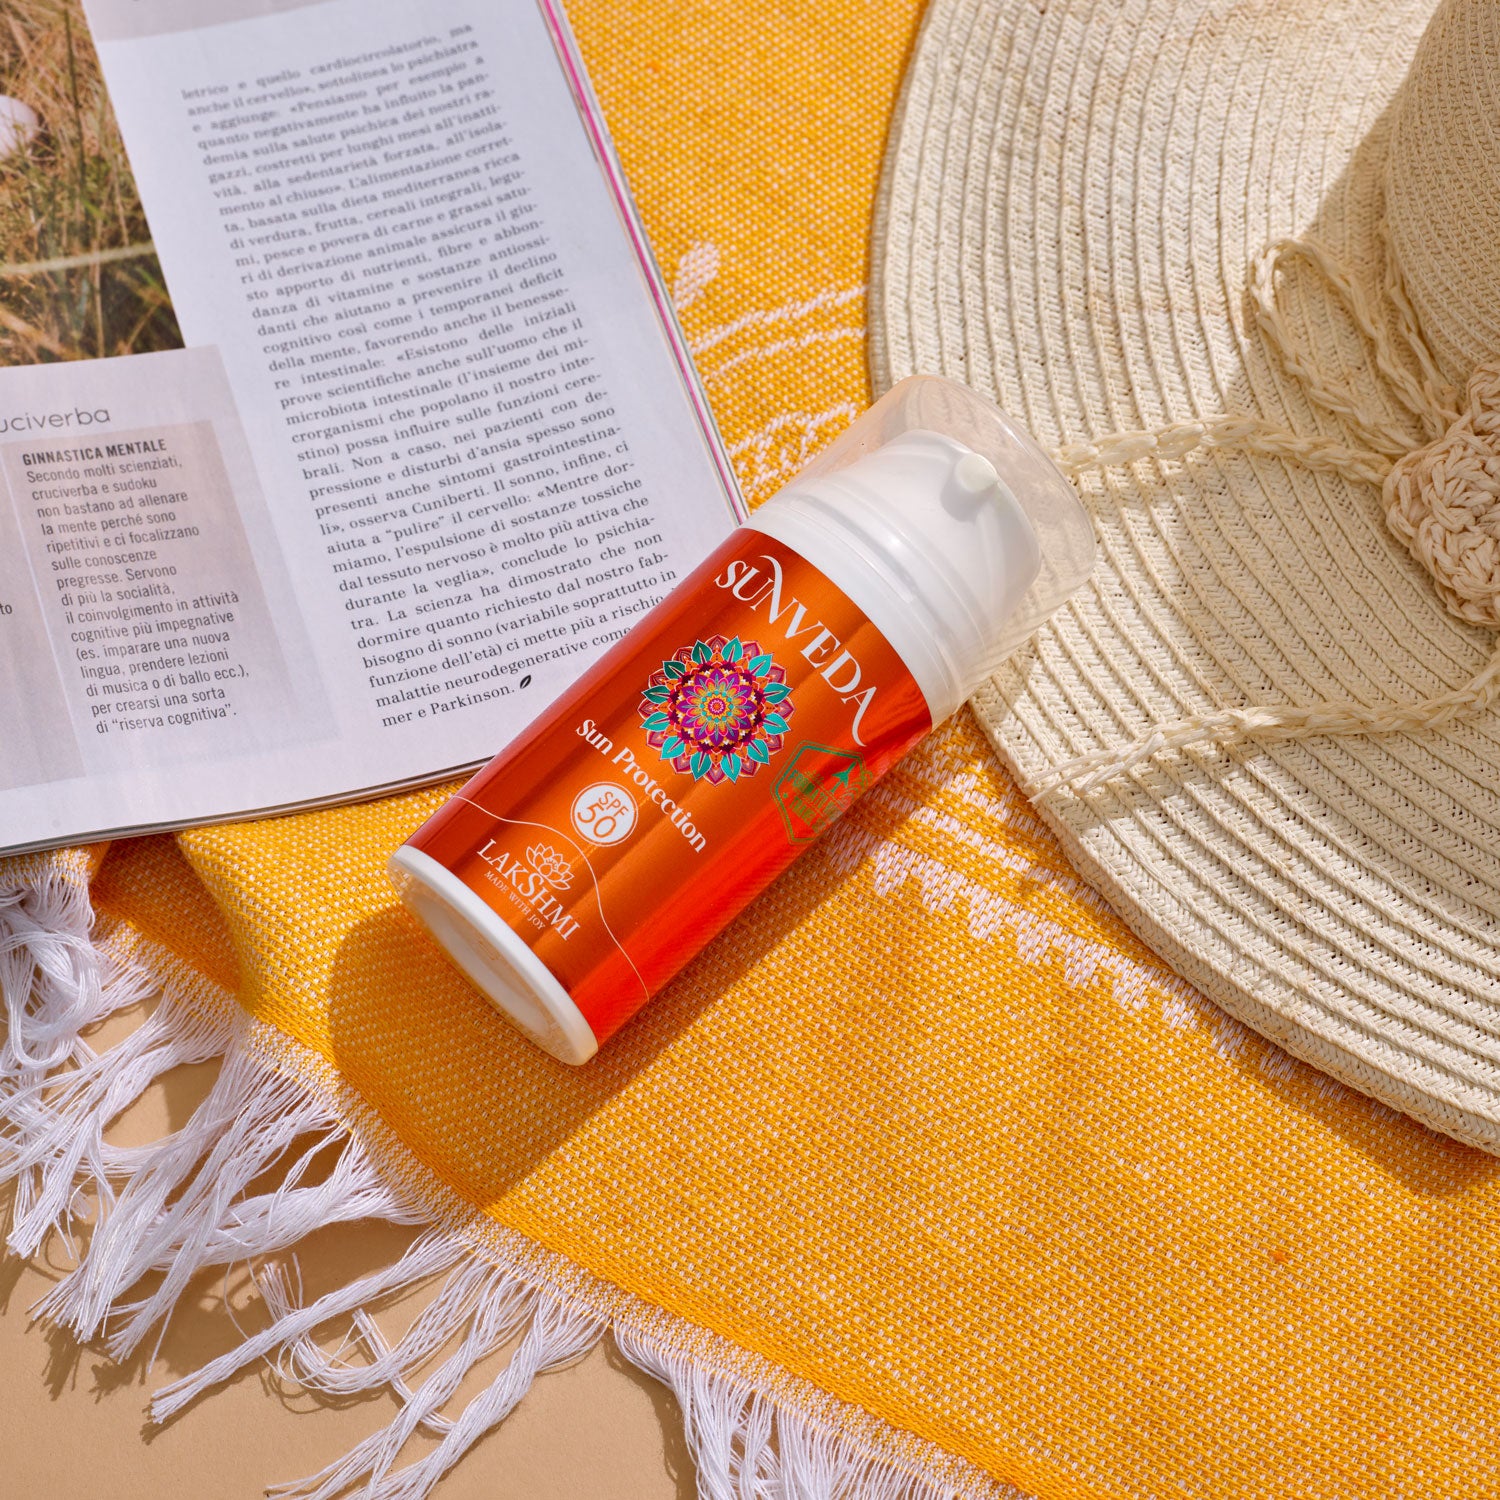 Sunveda Sun Protection 50 - Protezione alta con estratto di olio di mandorla